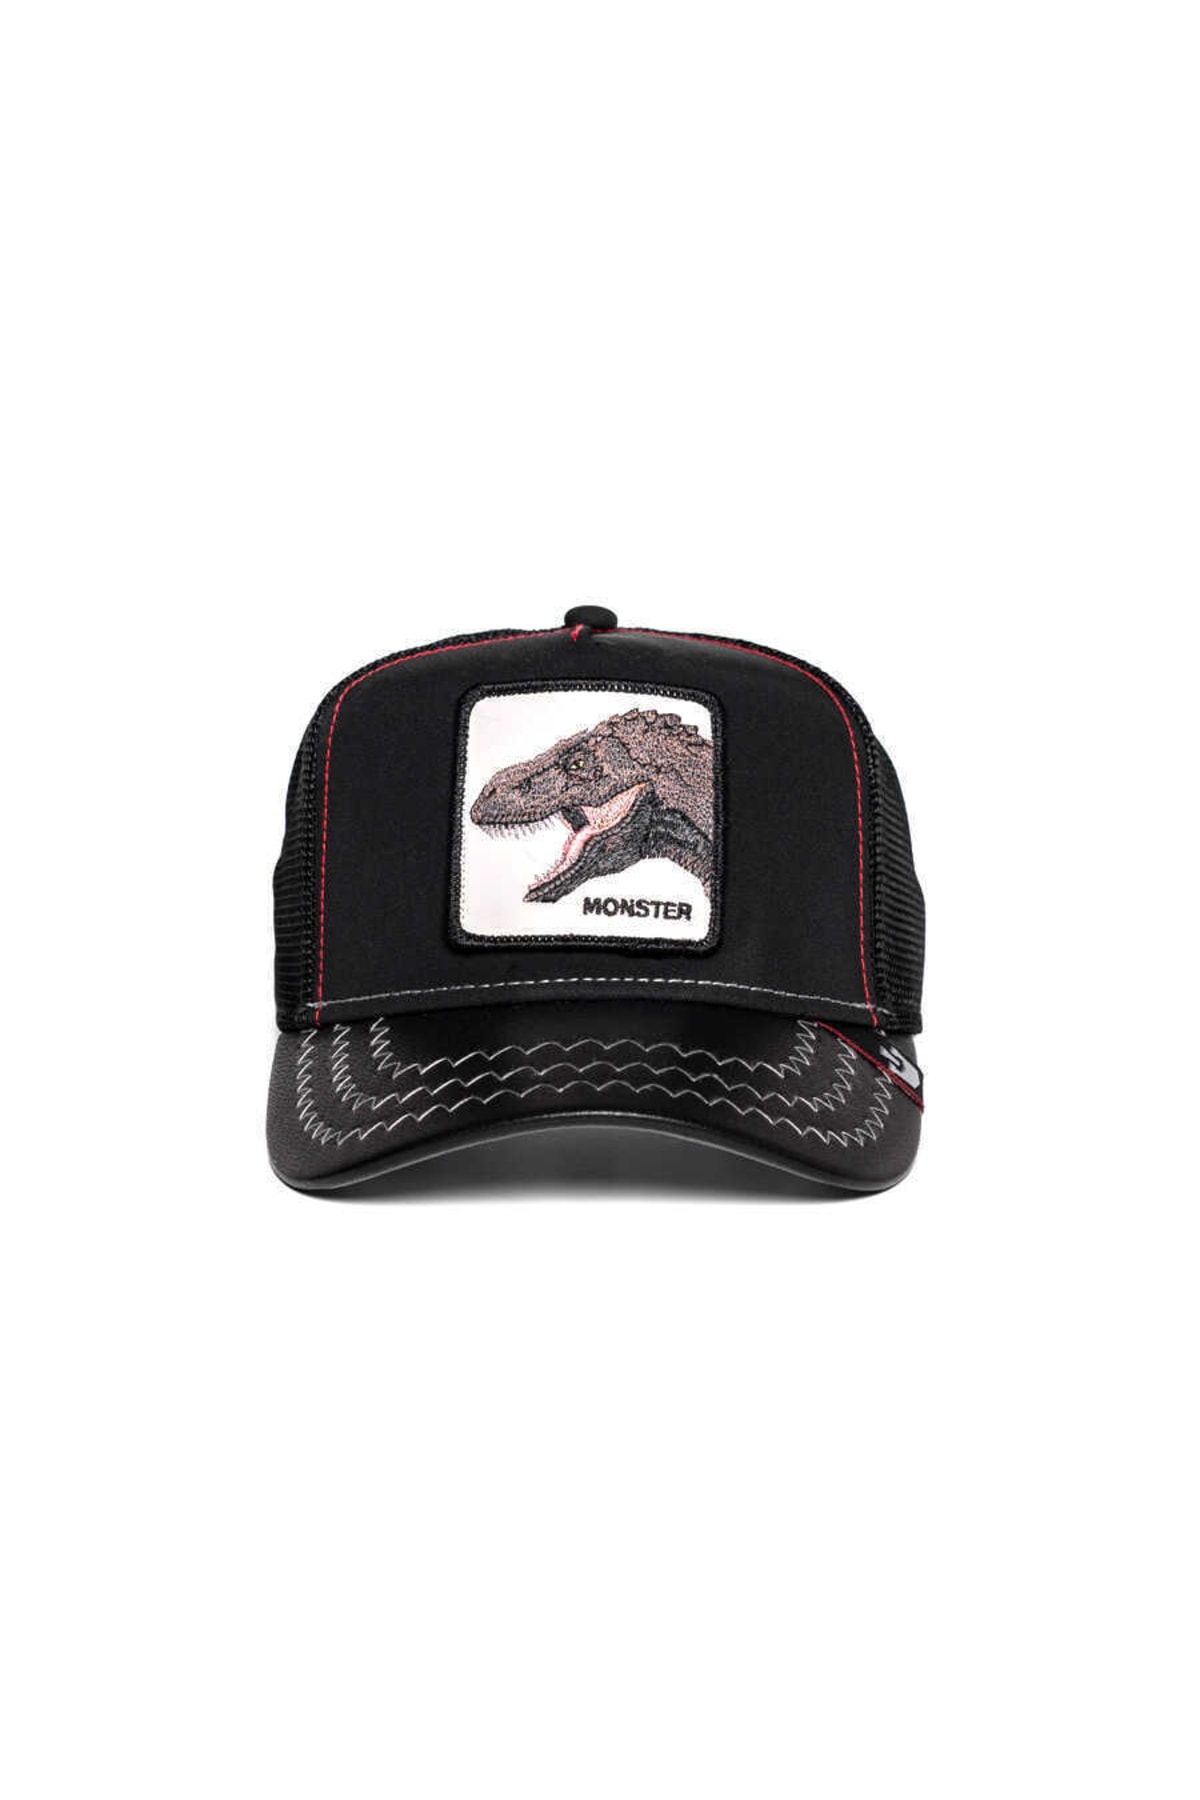 Goorin Bros . Tyrant King ( Dinozor Figürlü ) Şapka 101-0141